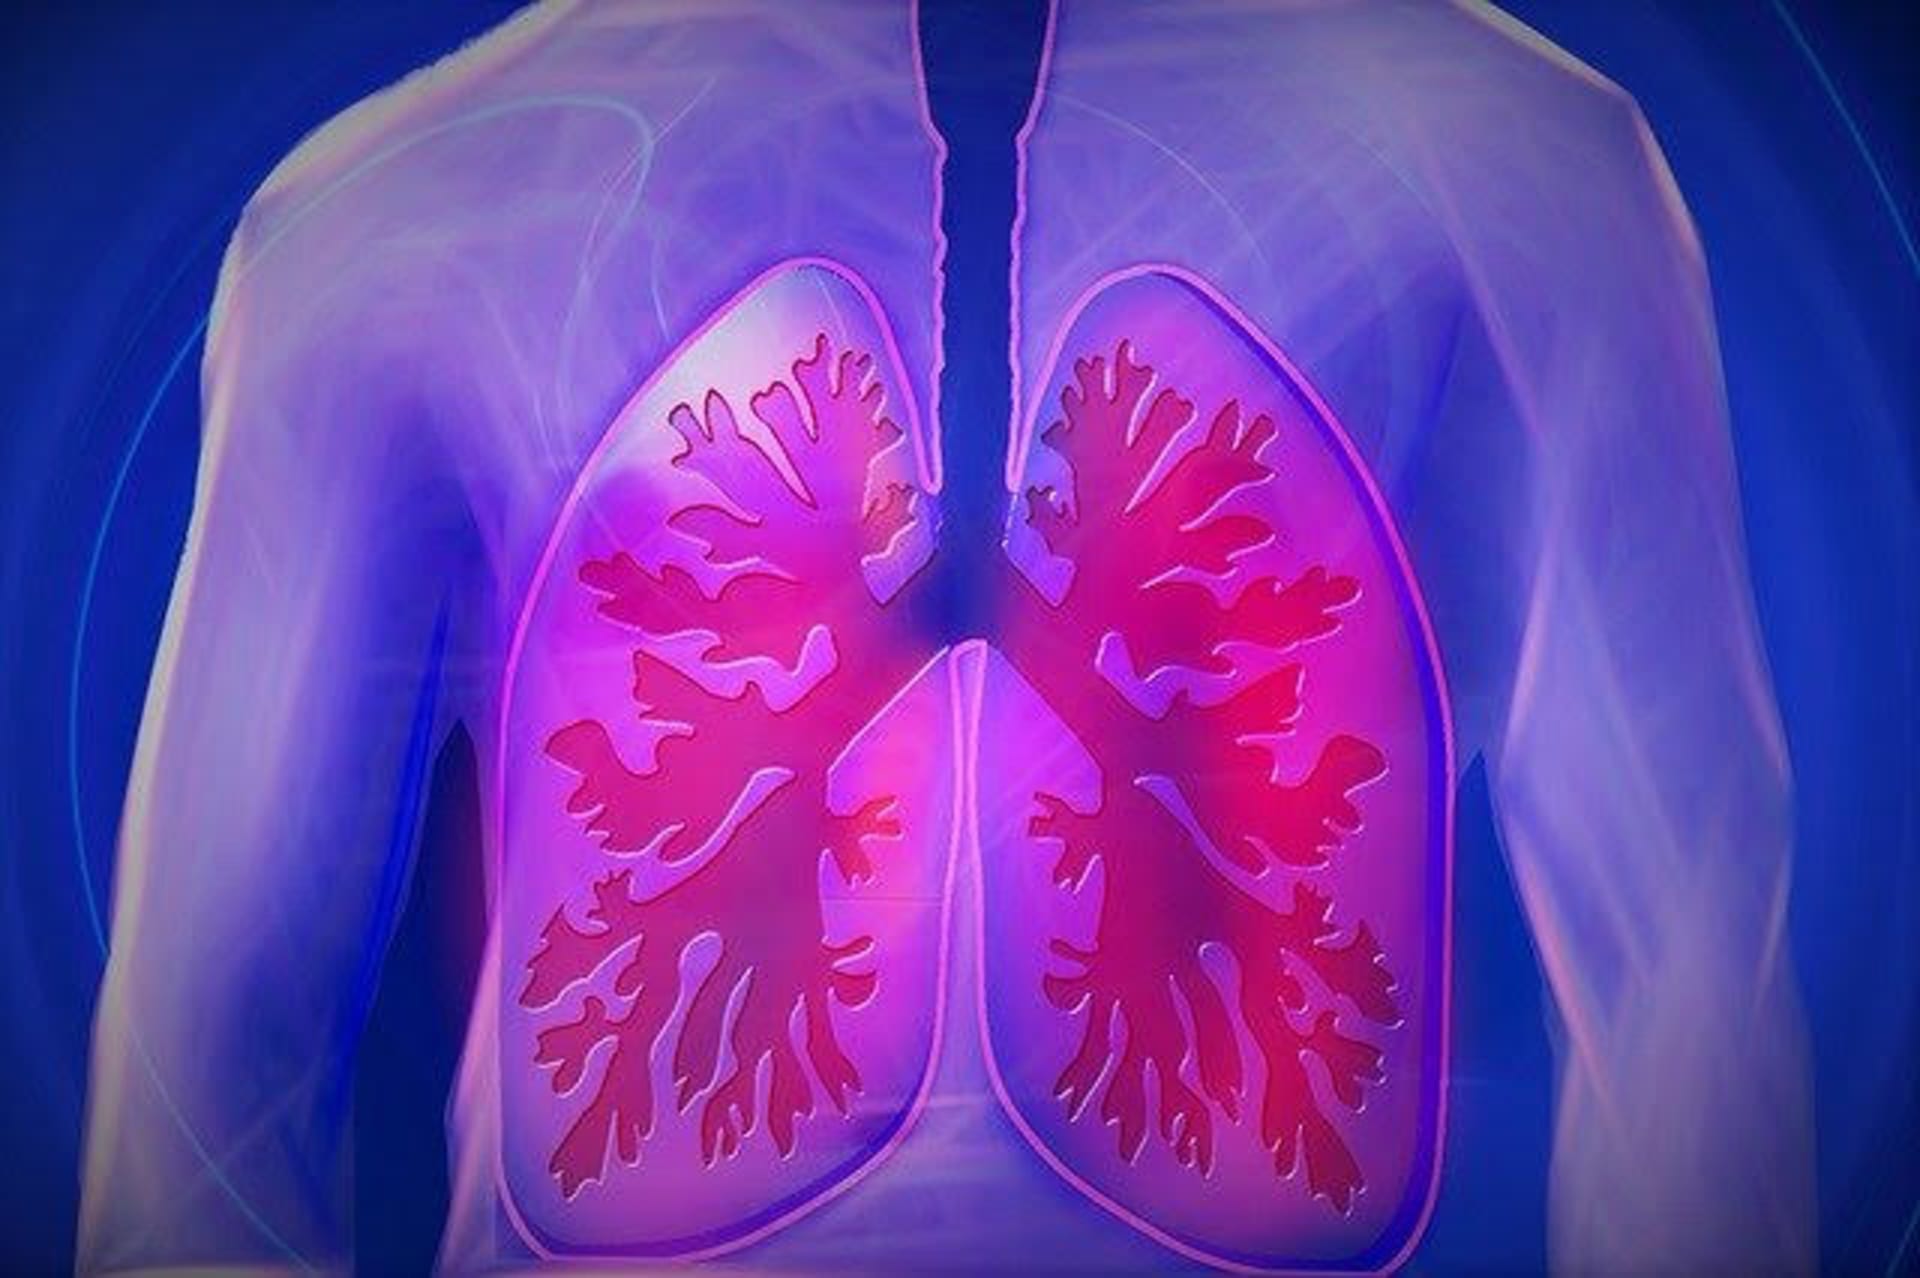 Skrytou tuberkulózu lékaři objeví jen v ojedinělých případech